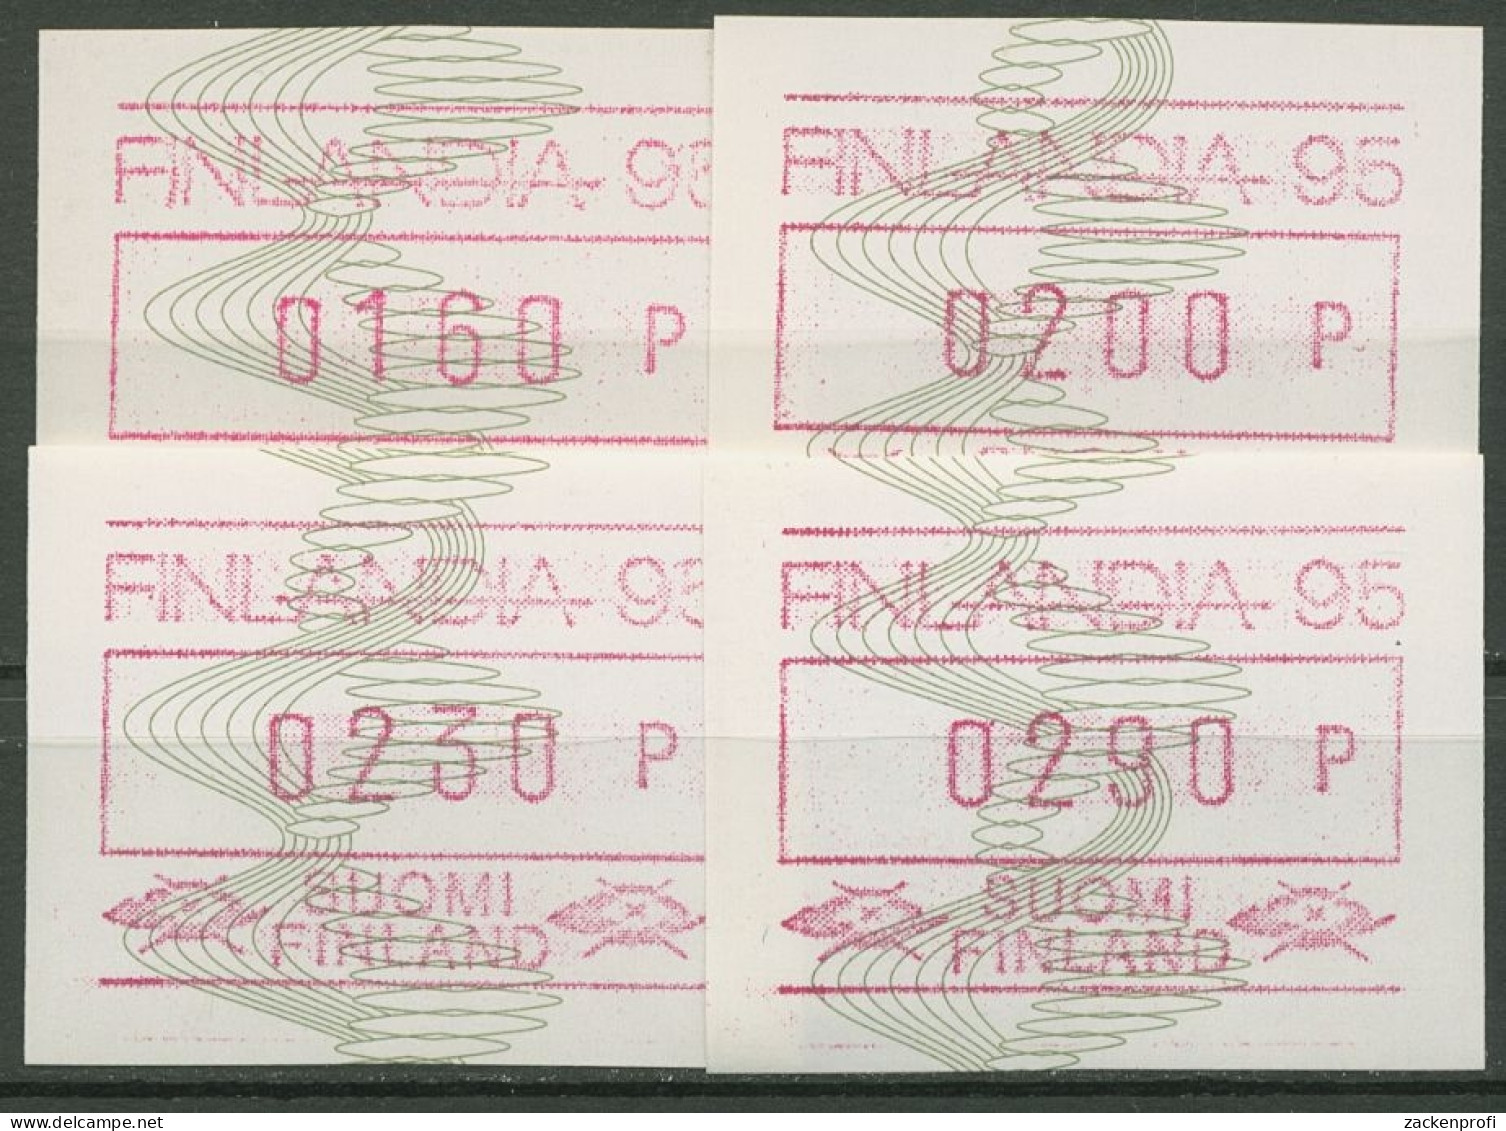 Finnland ATM 1993 FINLANDIA '95 Helsinki Satz ATM 18 S 2 Postfrisch - Machine Labels [ATM]